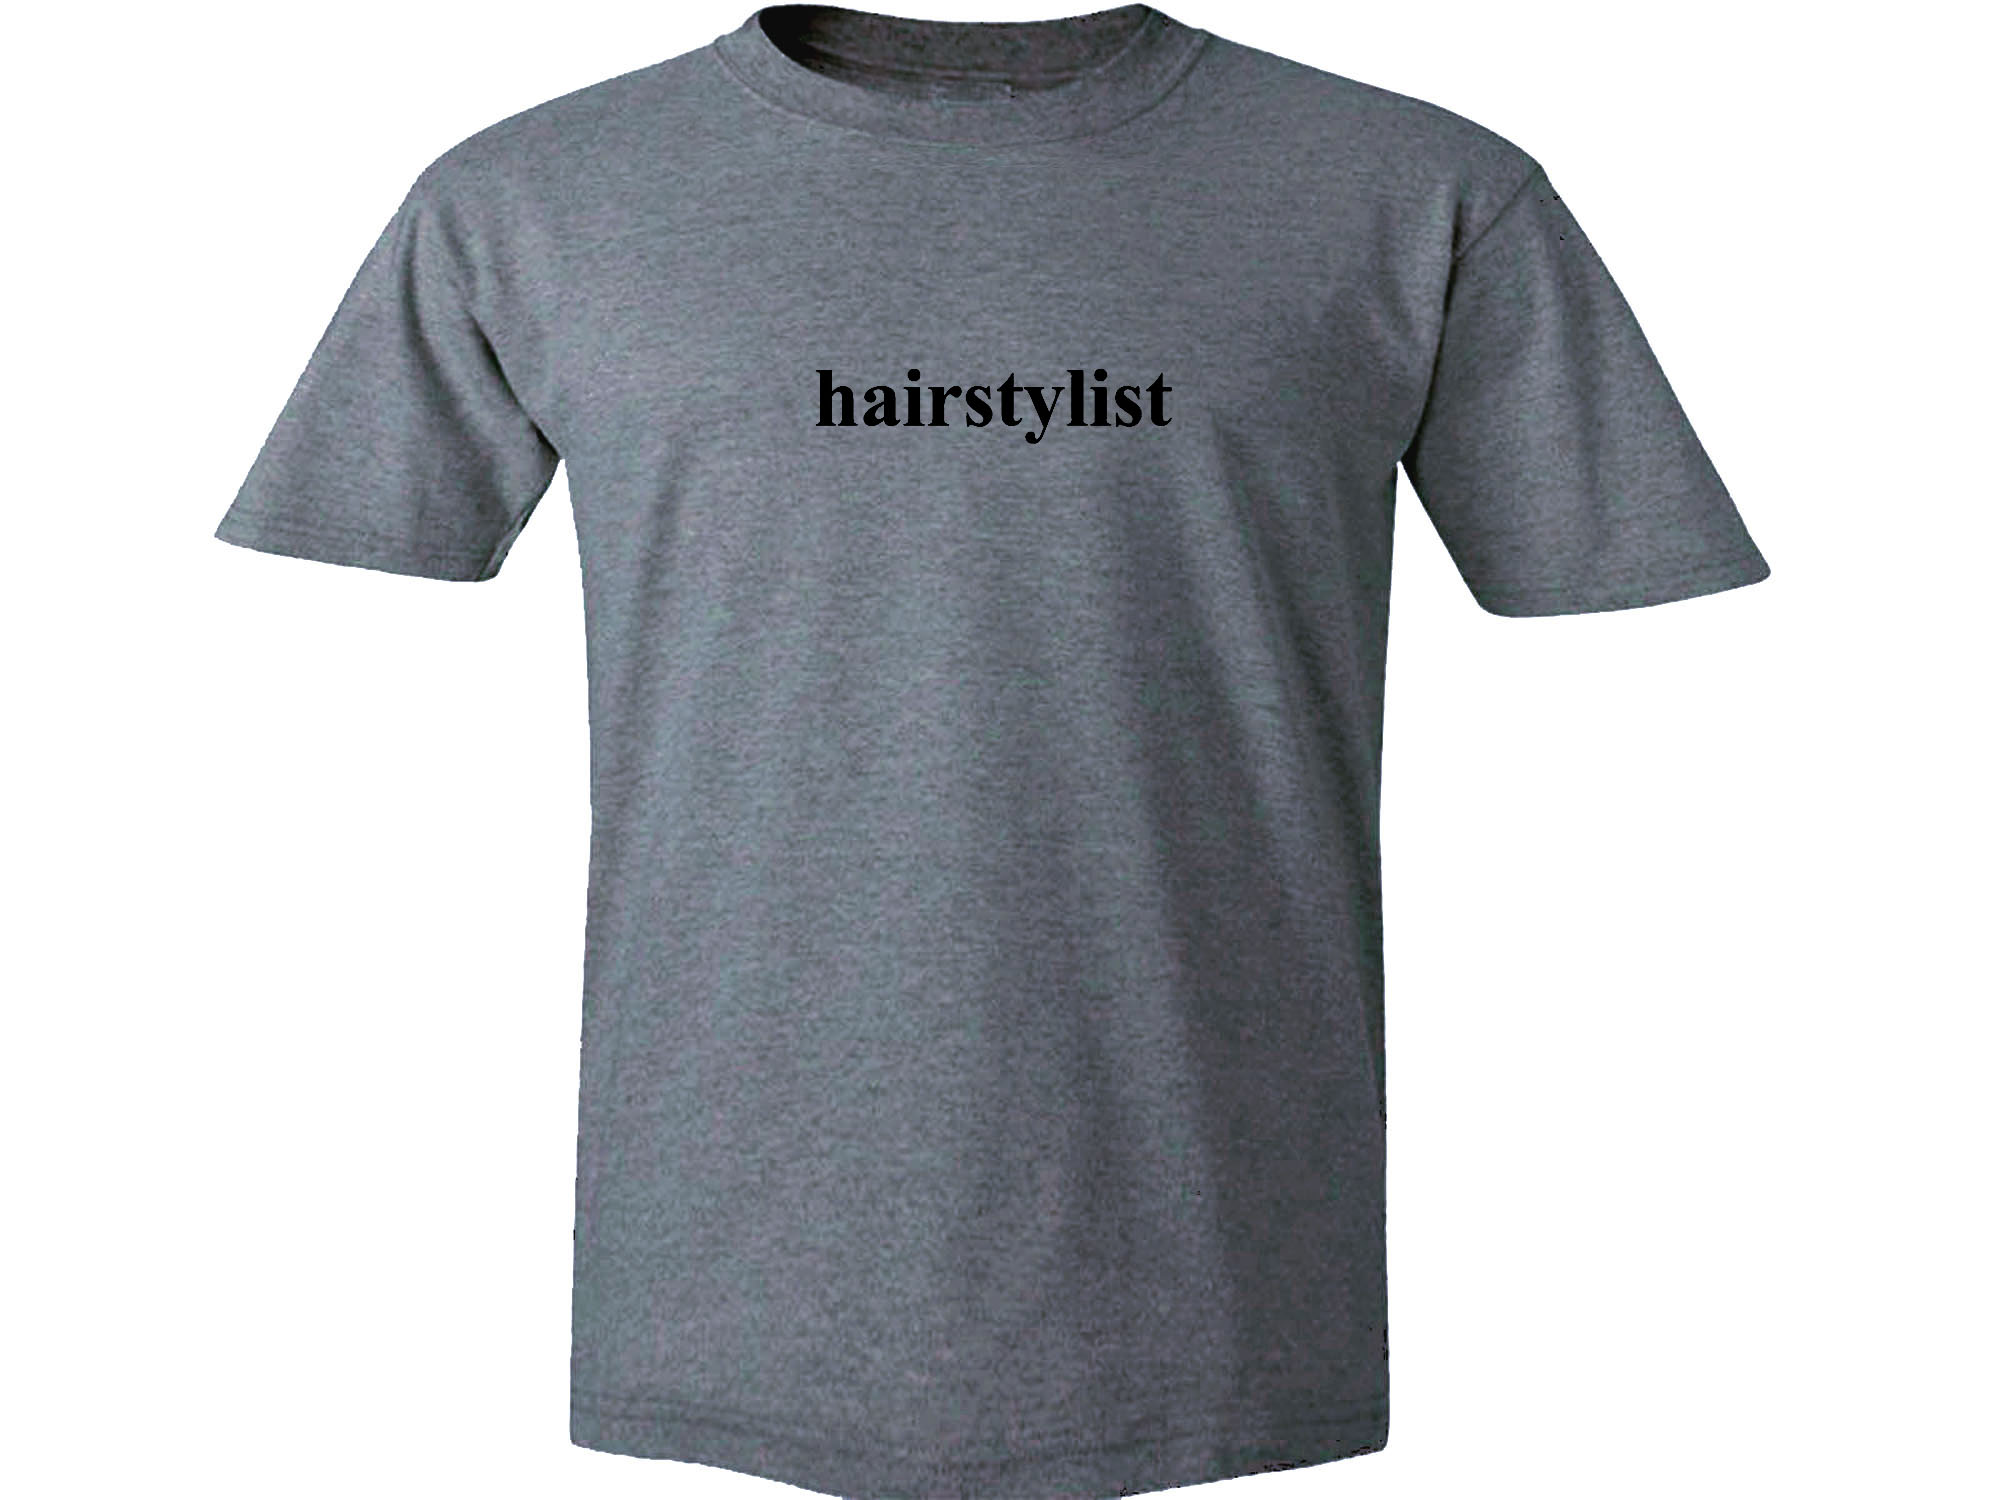 Hairstylist print black 100% cotton unique t-shirt